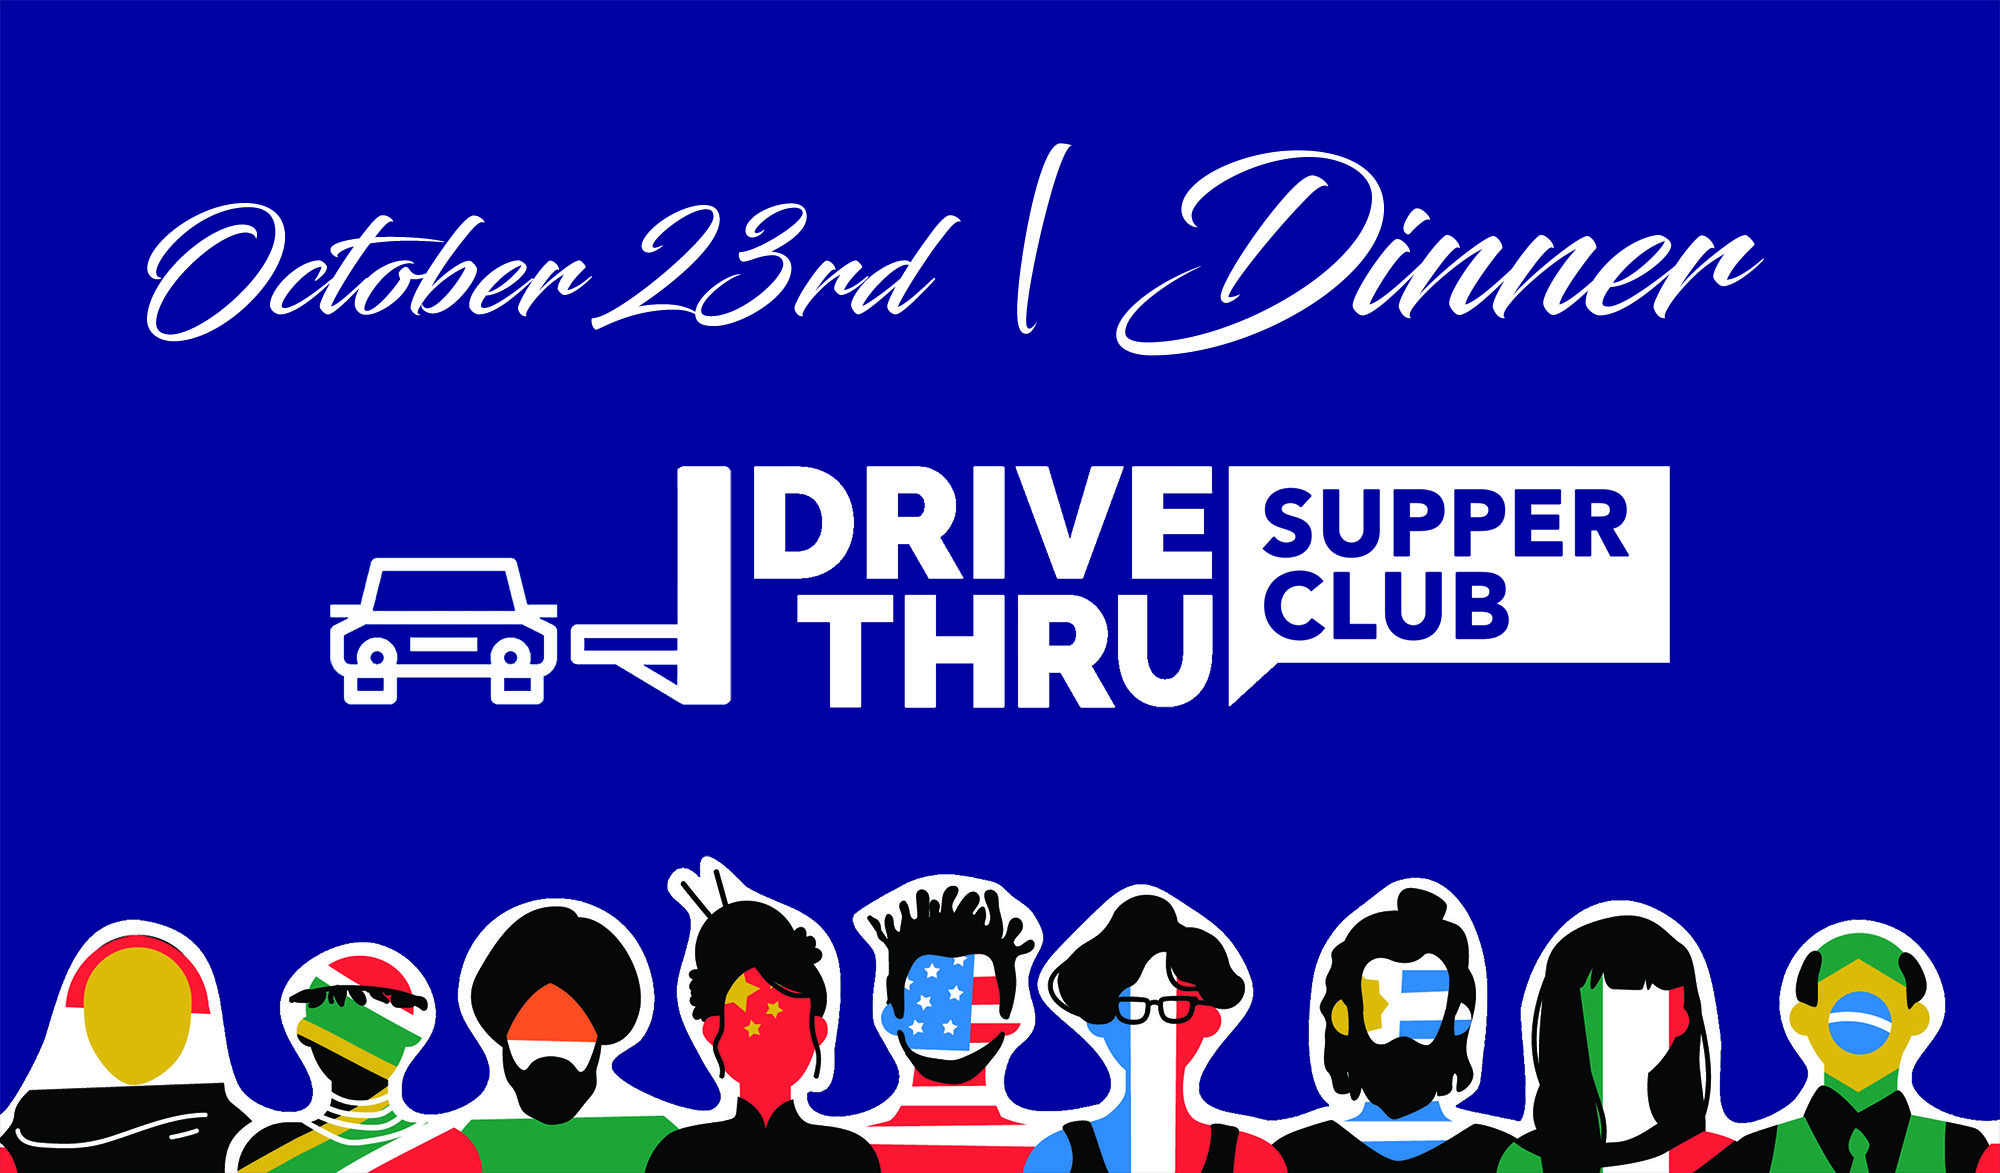 October 23 - Supper Club